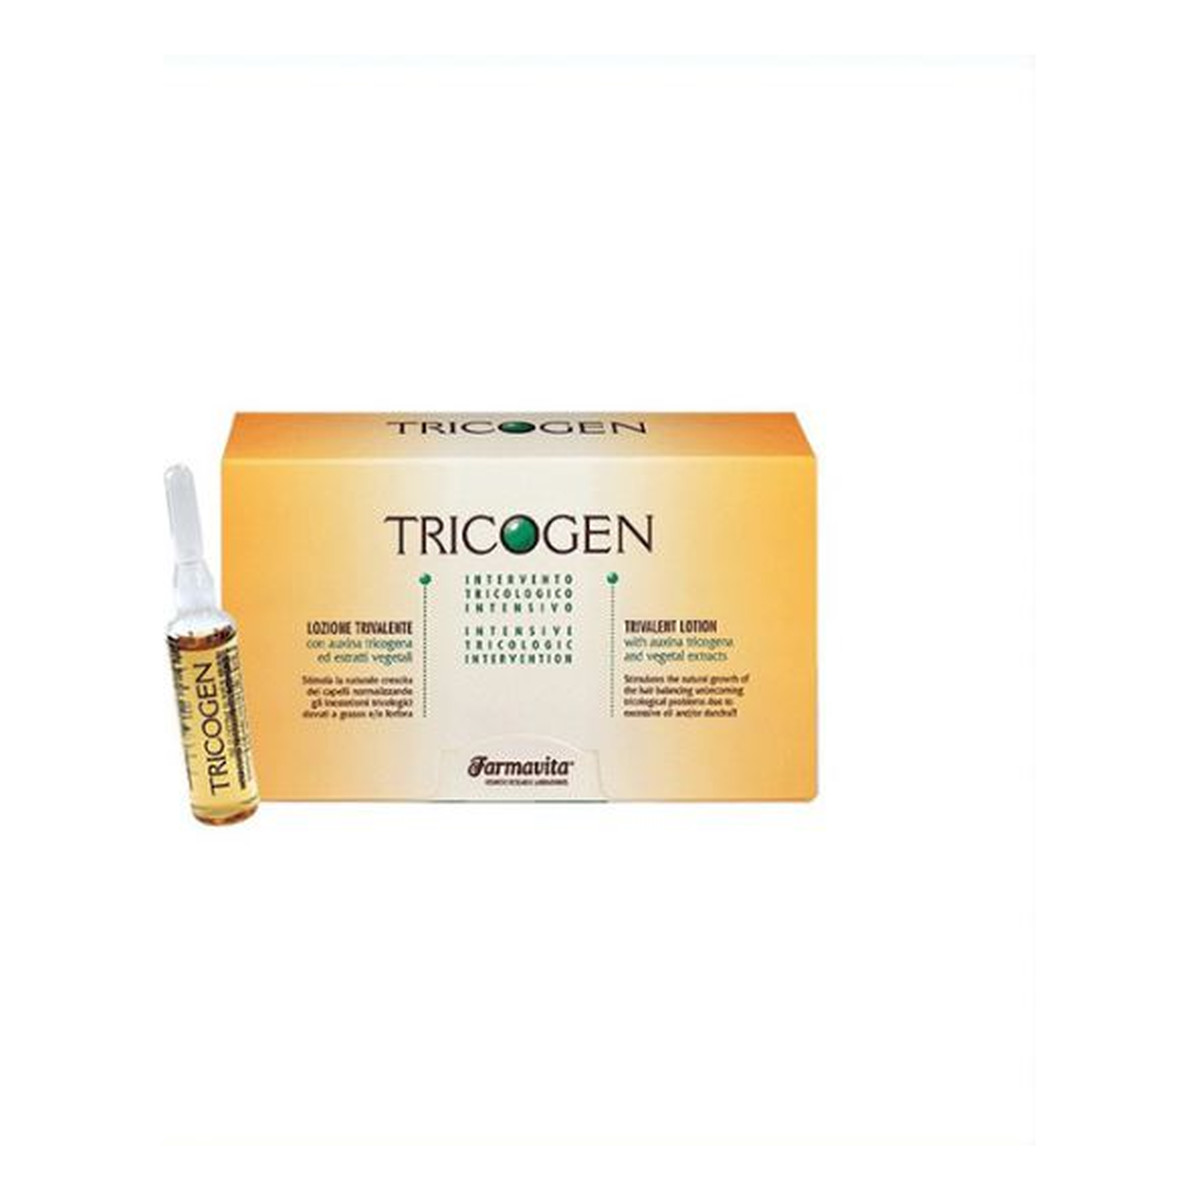 Farmavita Tricogen lotion kuracja przeciw wypadaniu włosów 12x 8ml